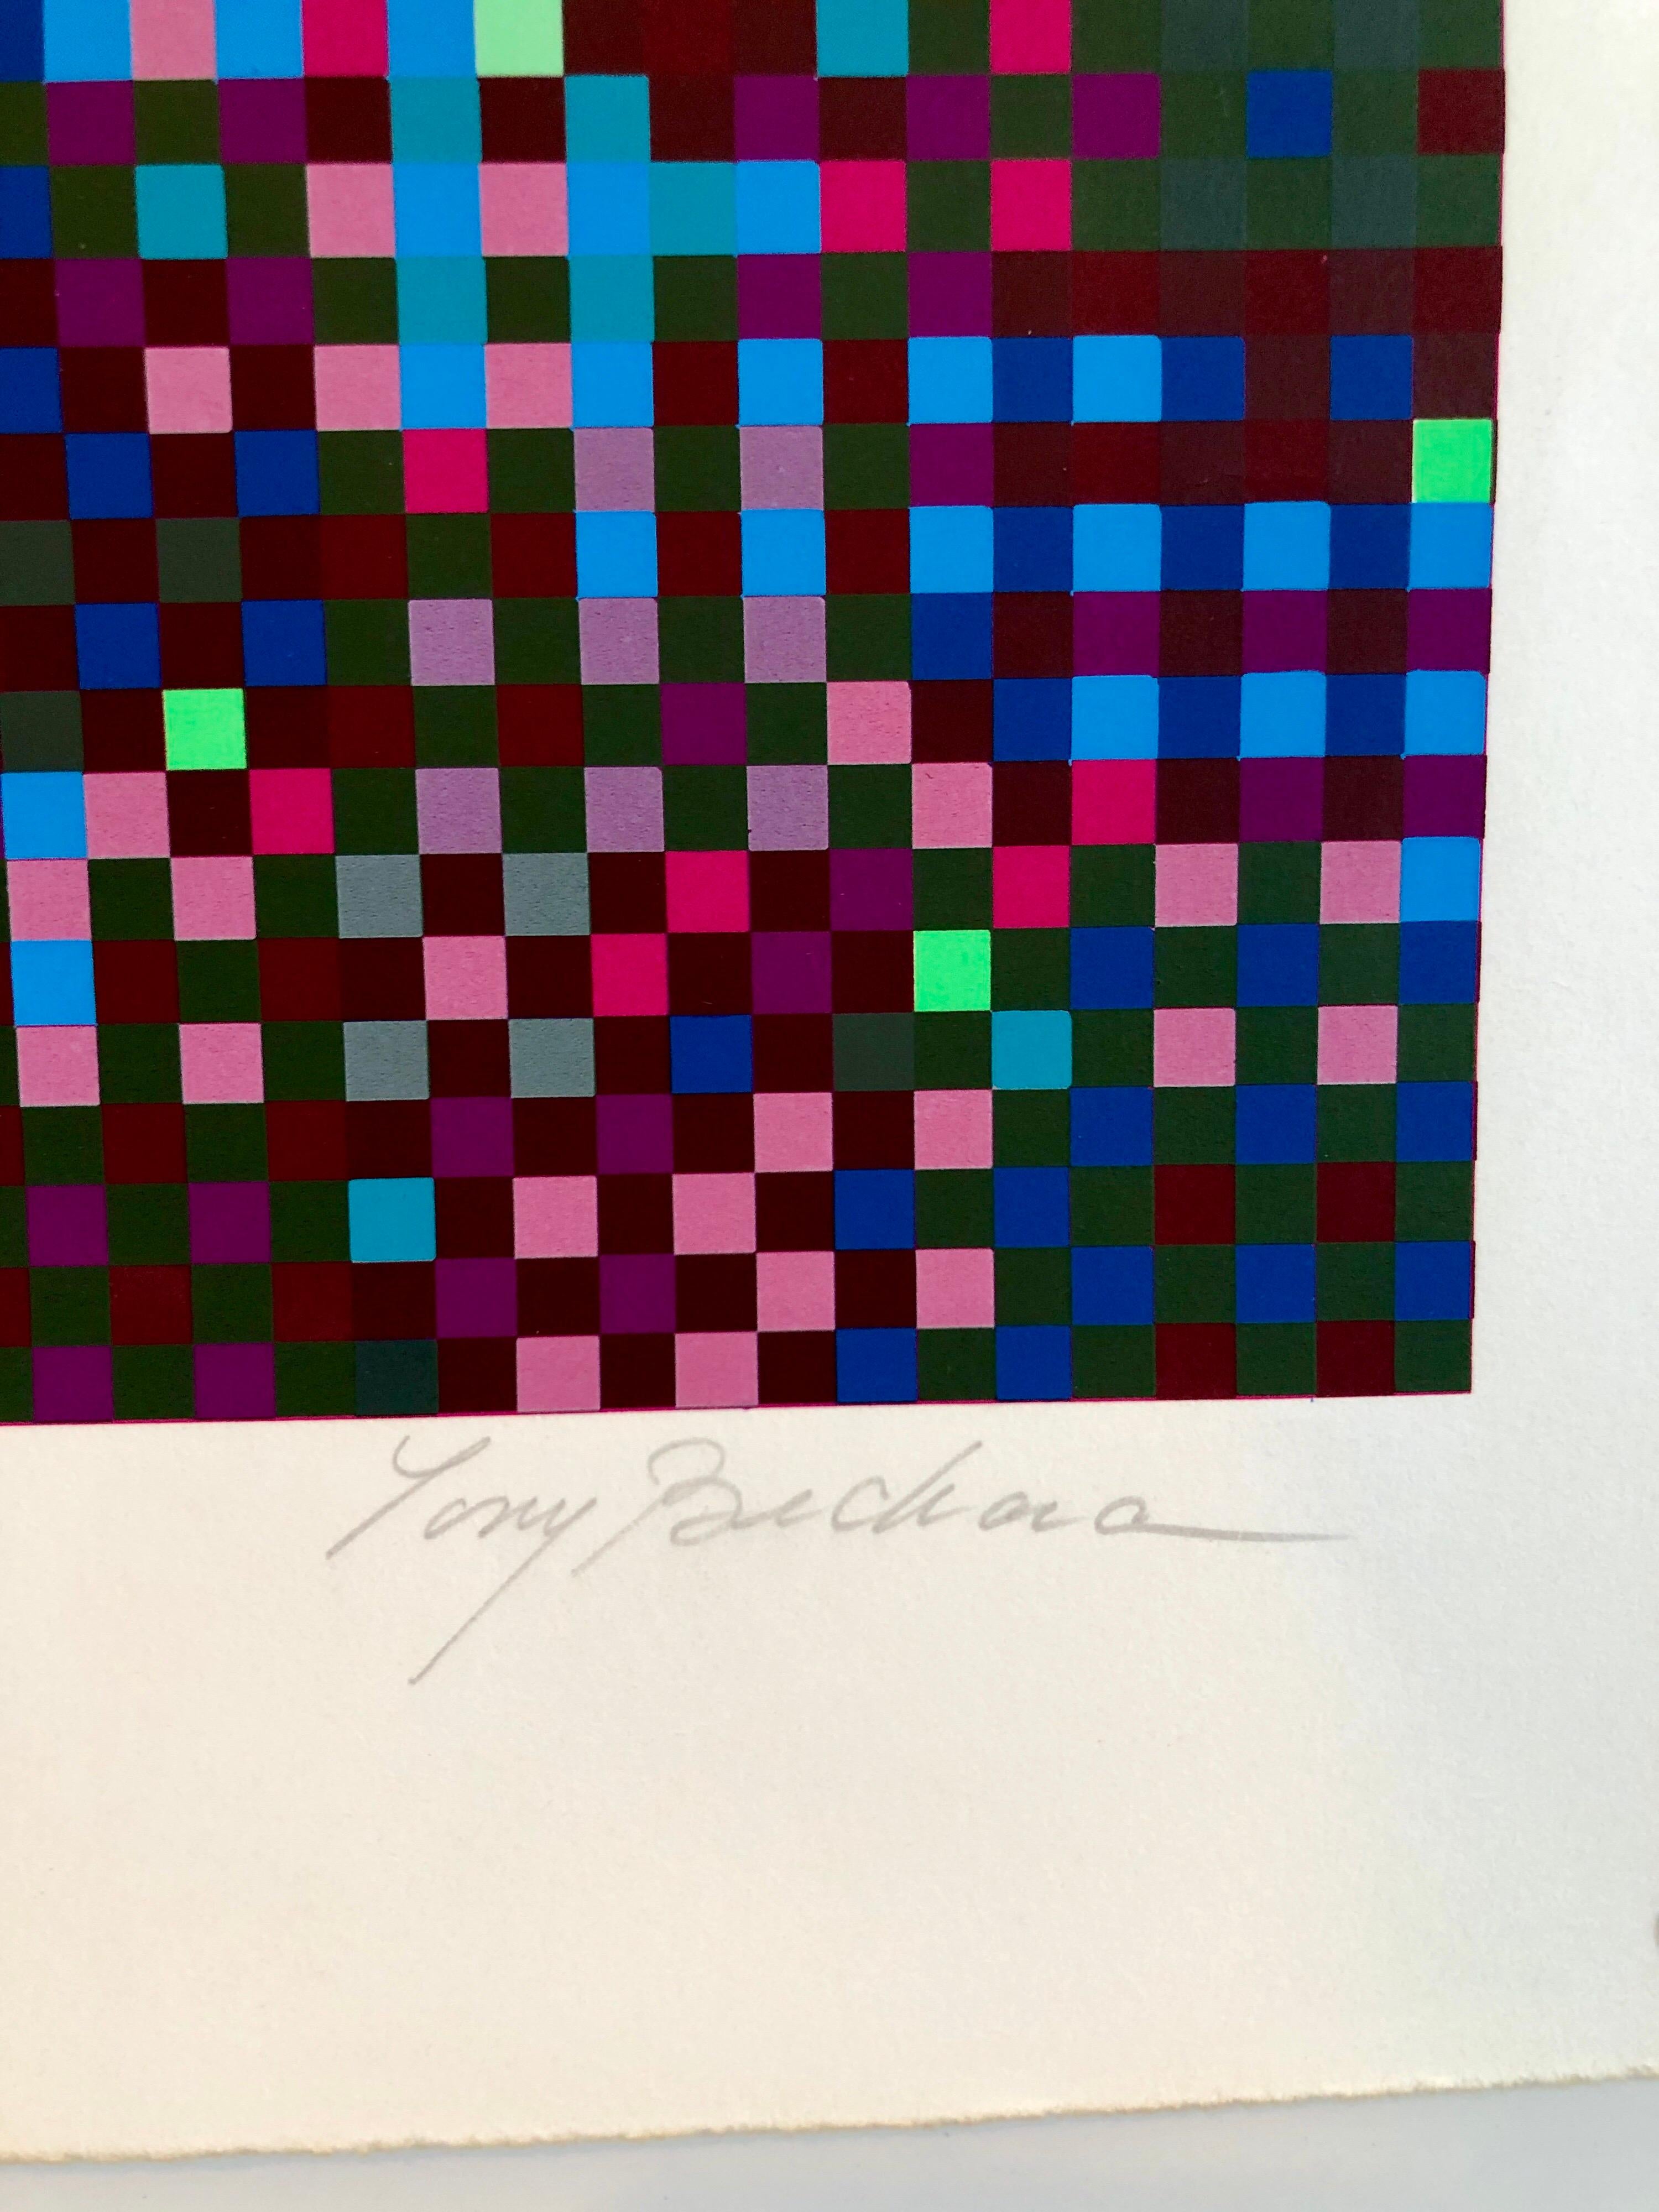 Farbiges Raster. Ziggurat-Form. Handsignierter und nummerierter Siebdruck.
Tony Bechara, Künstler, geboren 1942 in Puerto Rico. Malerin, Grafikerin. Bechara besuchte die Georgetown University in Washington, D.C., und die School of Jurisprudence and